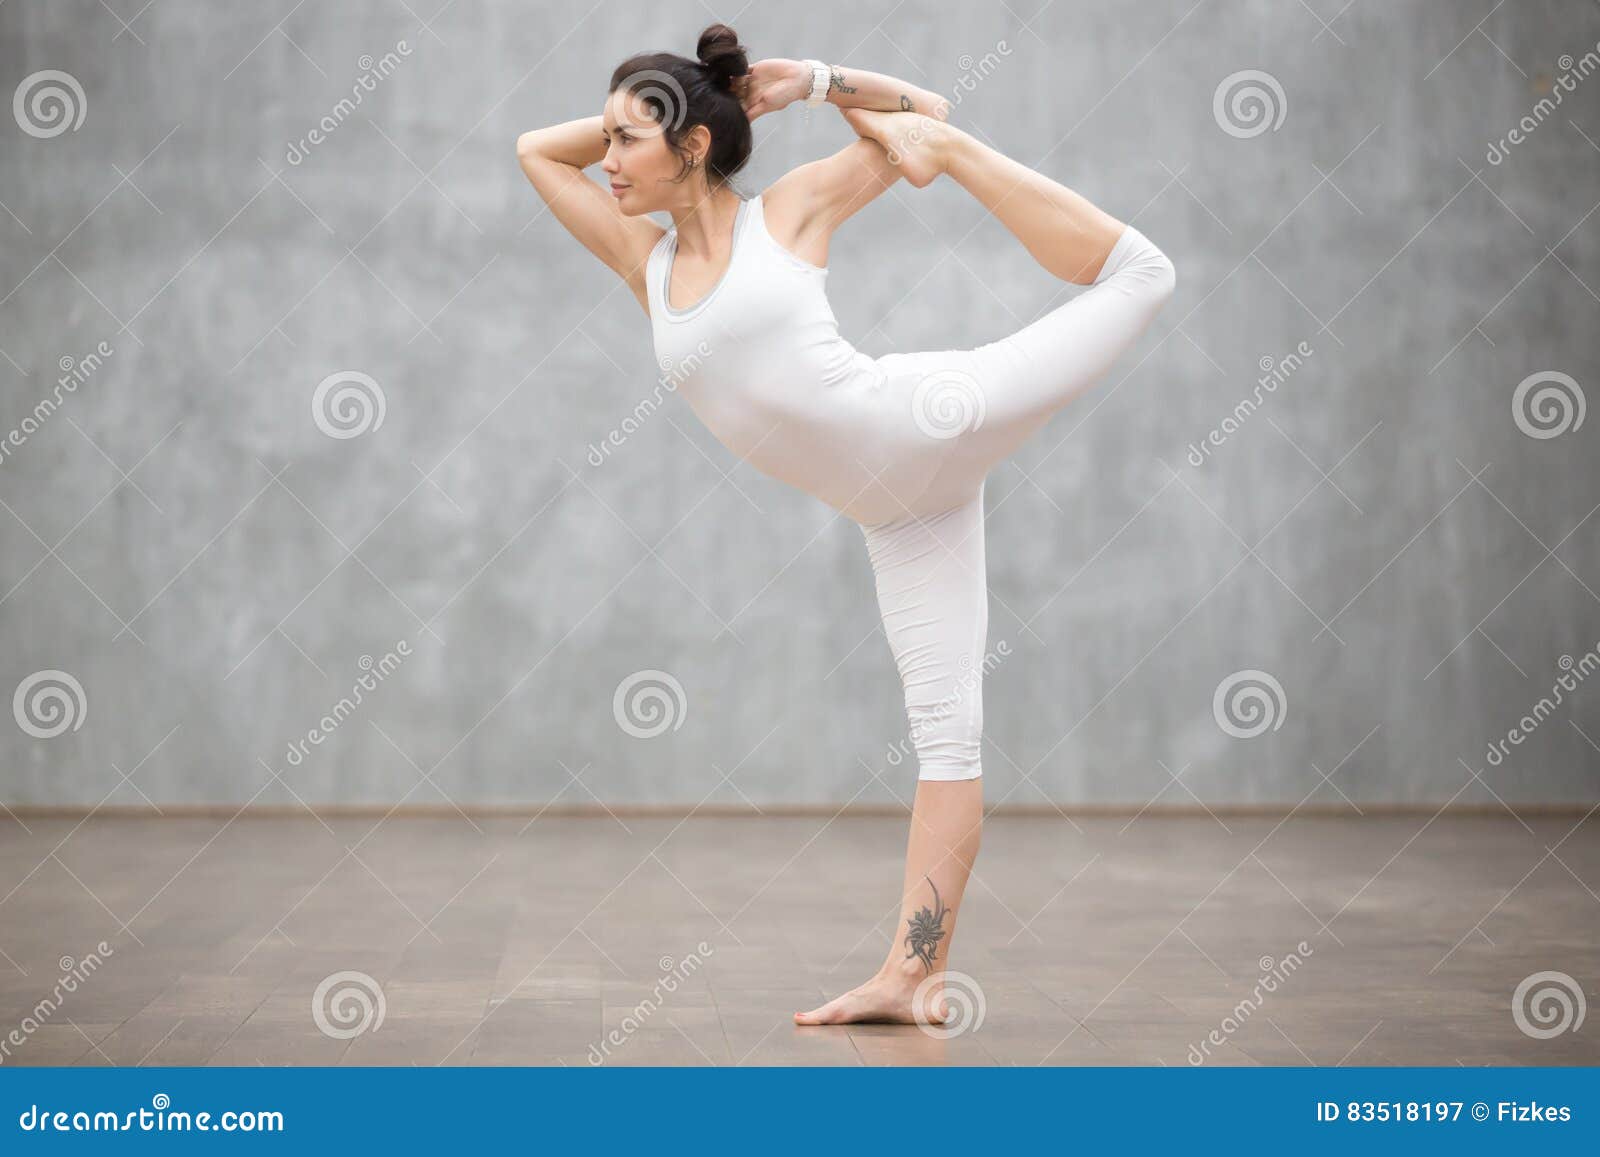 Beautiful Yoga: Natarajasana Pose Stock Image - Image of ...